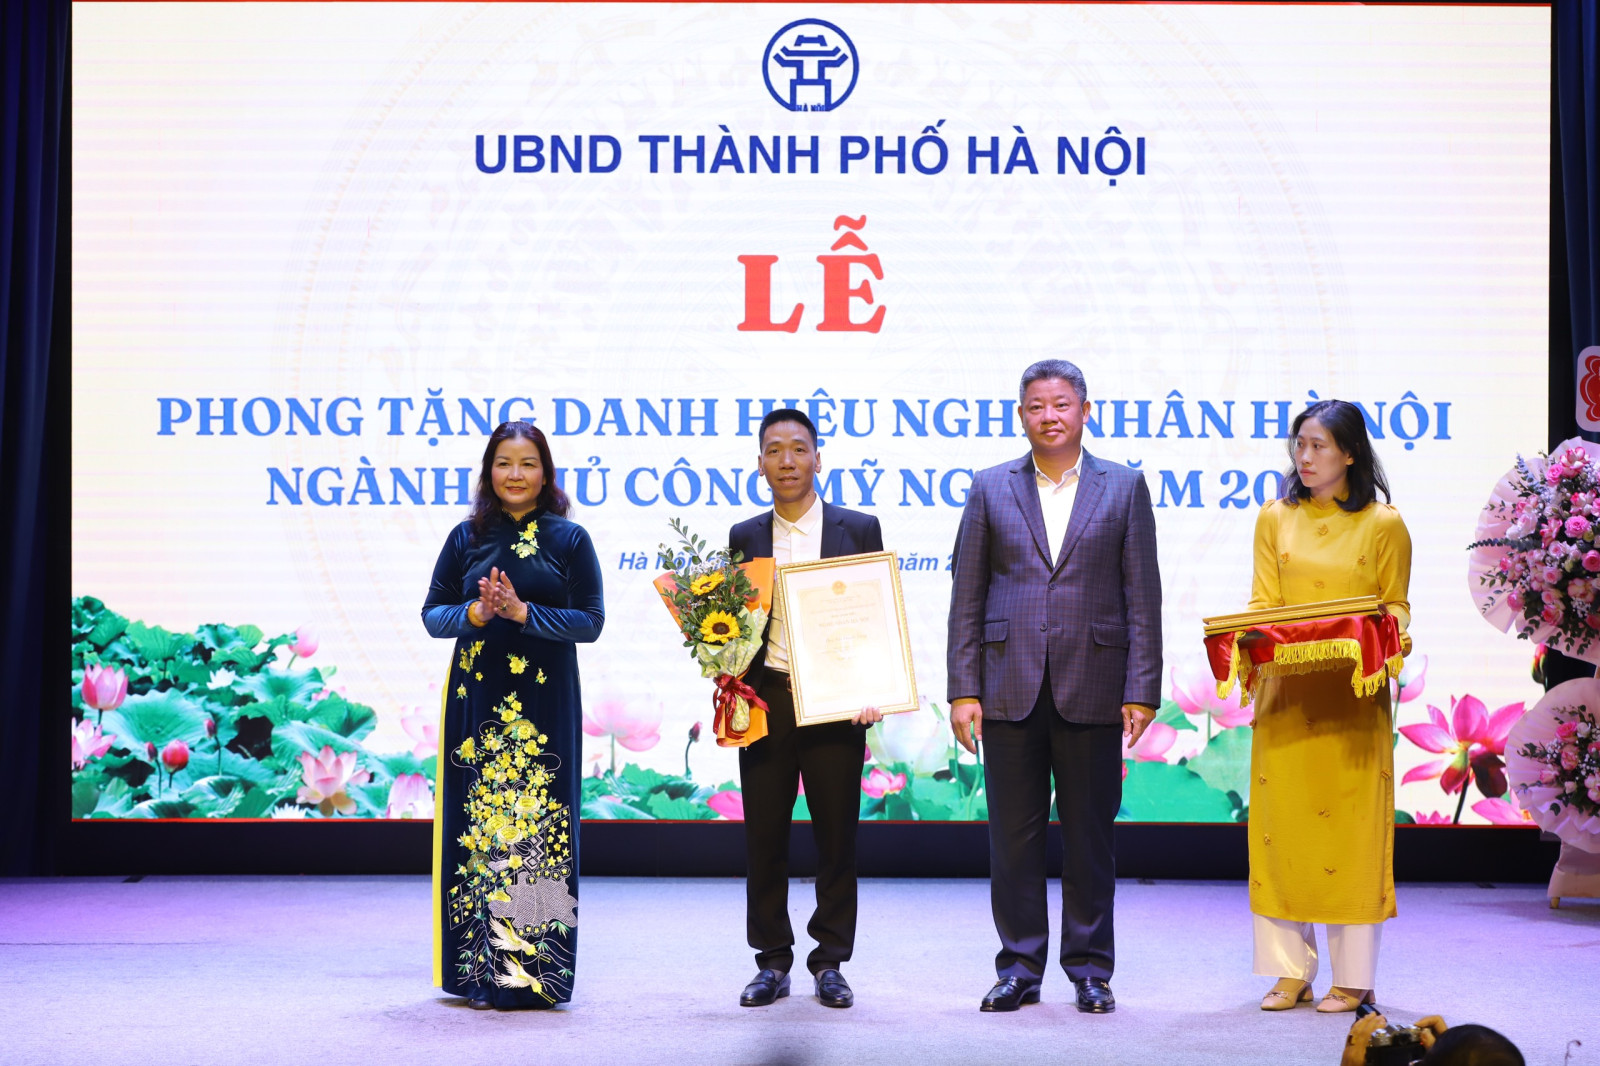 Nghệ nhân Bùi Thanh Tùng được phong tặng danh hiệu Nghệ nhân Hà Nội - Ảnh 1